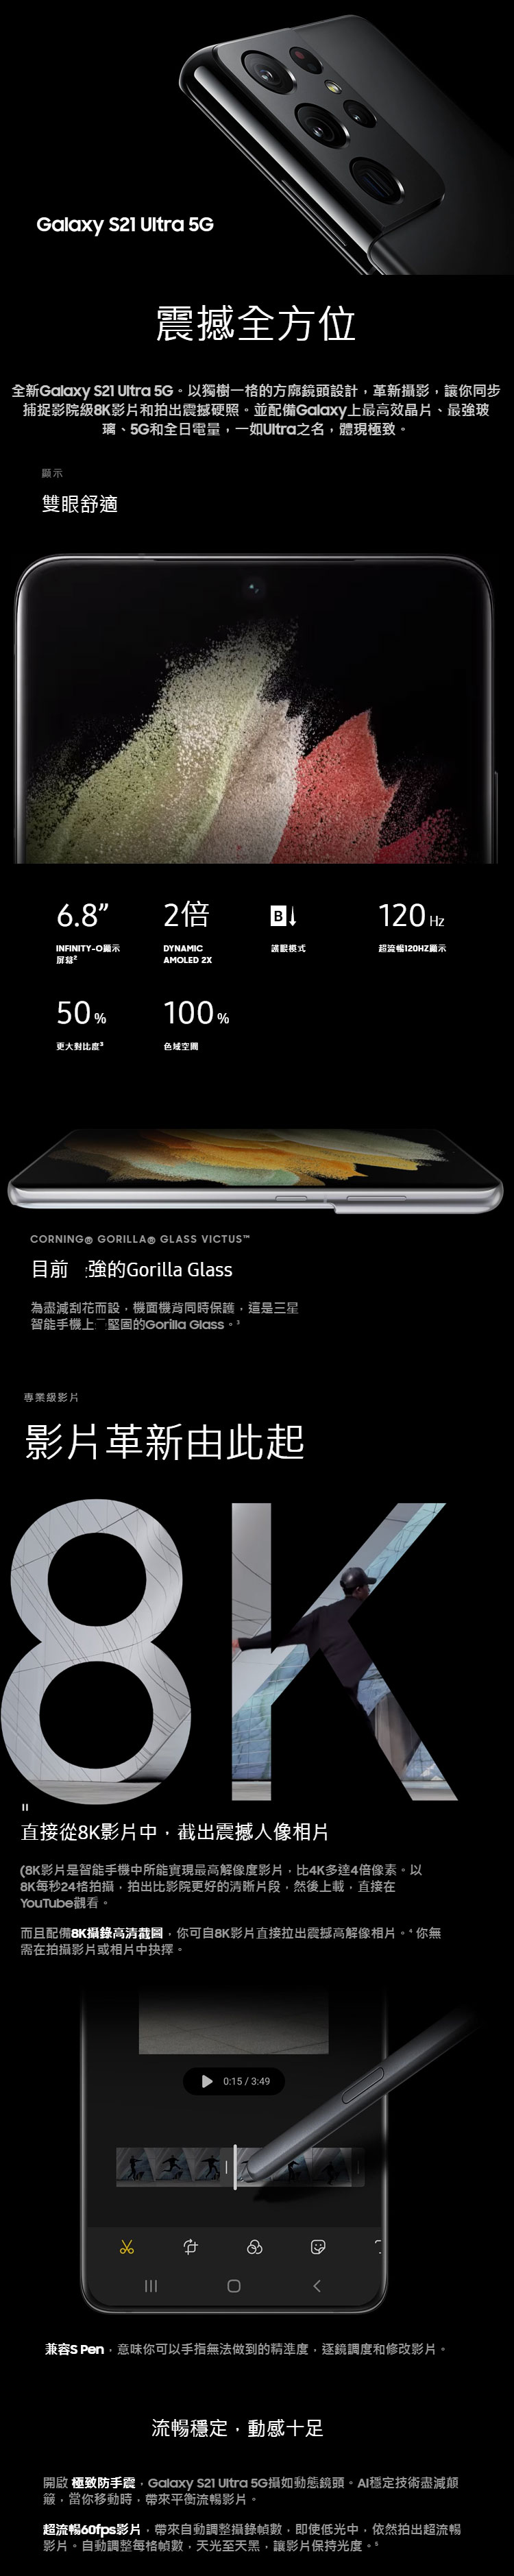 Samsung三星Galaxy S21 Ultra 5G 手機12+256GB 幻影銀| 香港蘇寧SUNING